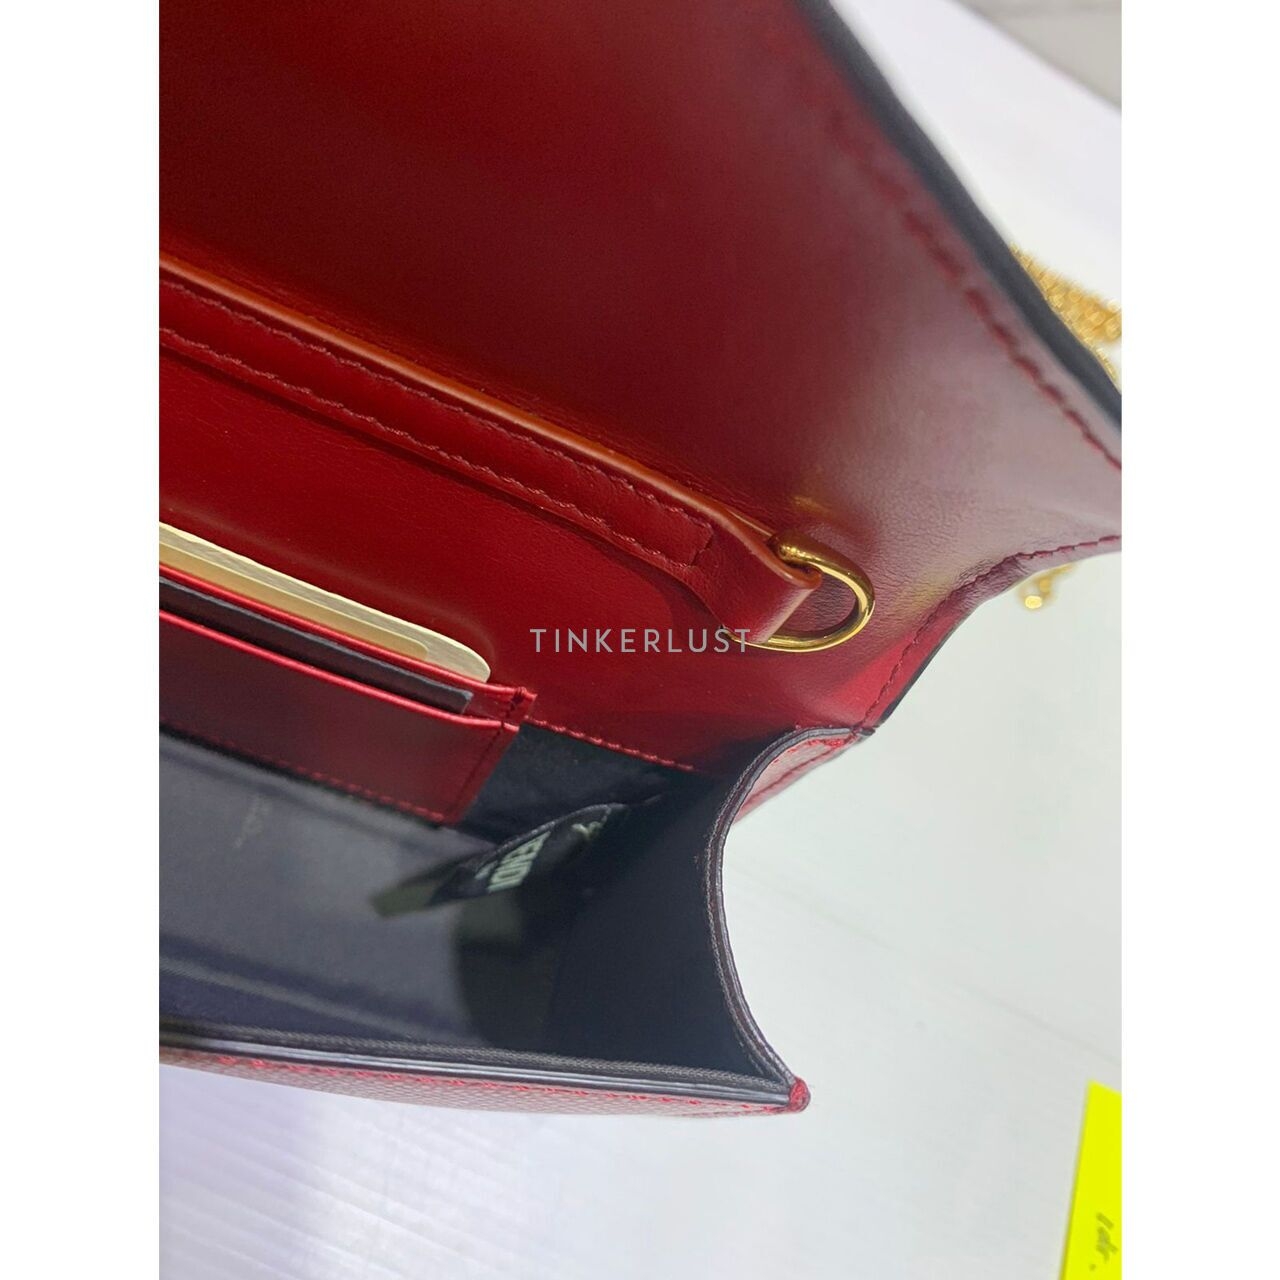 Fendi Convertible Belt Bag Logo FF Leather Red 2018 Sling Bag